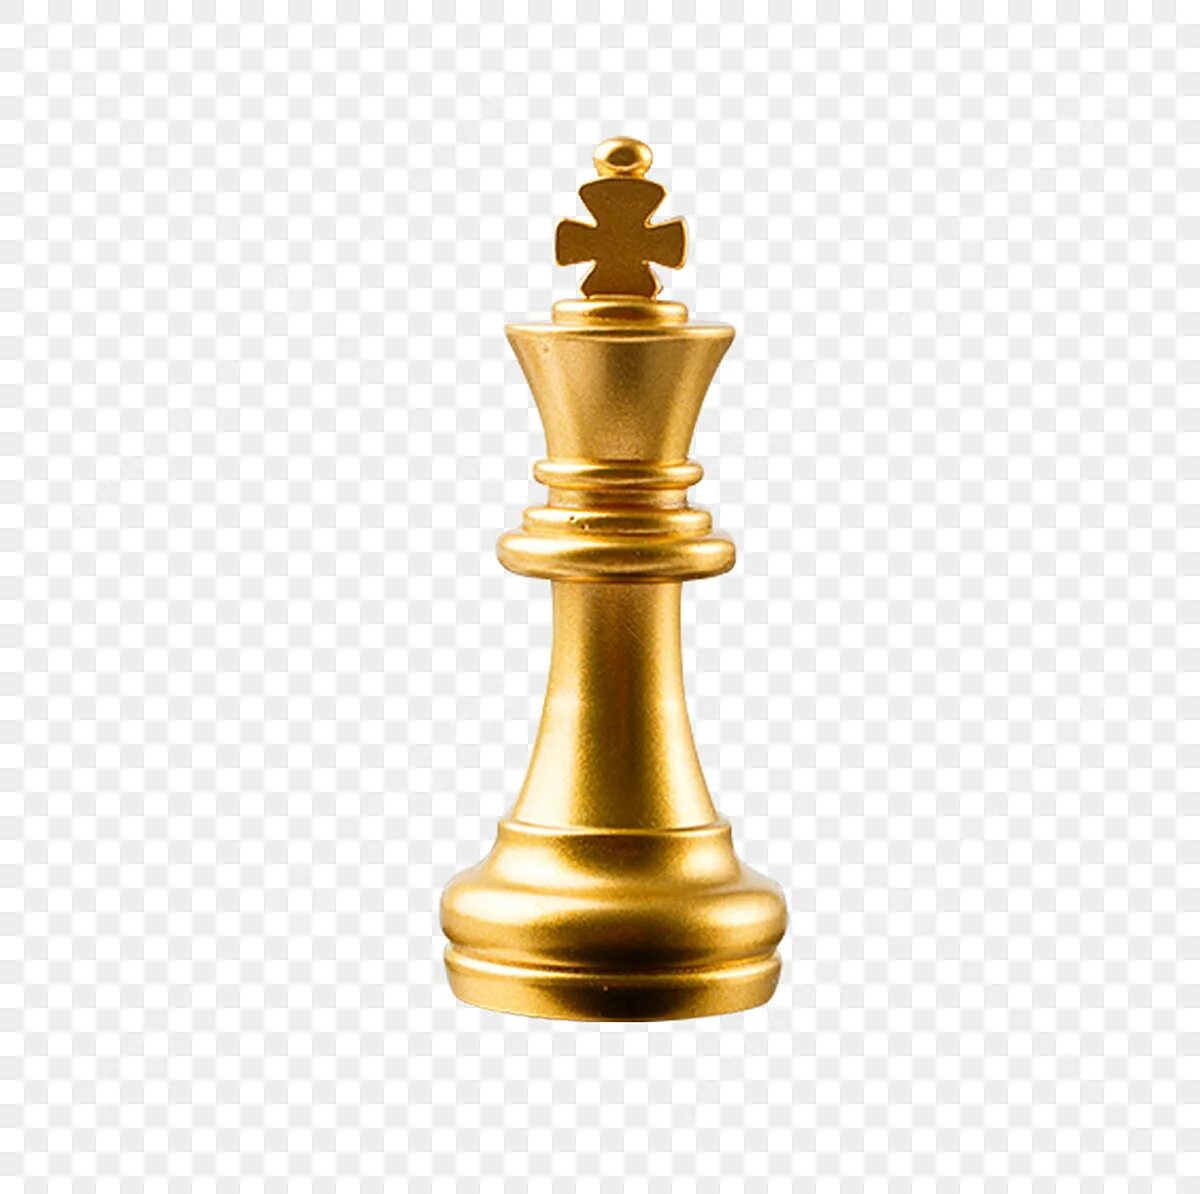 Jean paul золотые. Шахматы пешка ферзь. Золотой шахматный Король. Золотая шахматная фигура. Цветные шахматные фигуры.